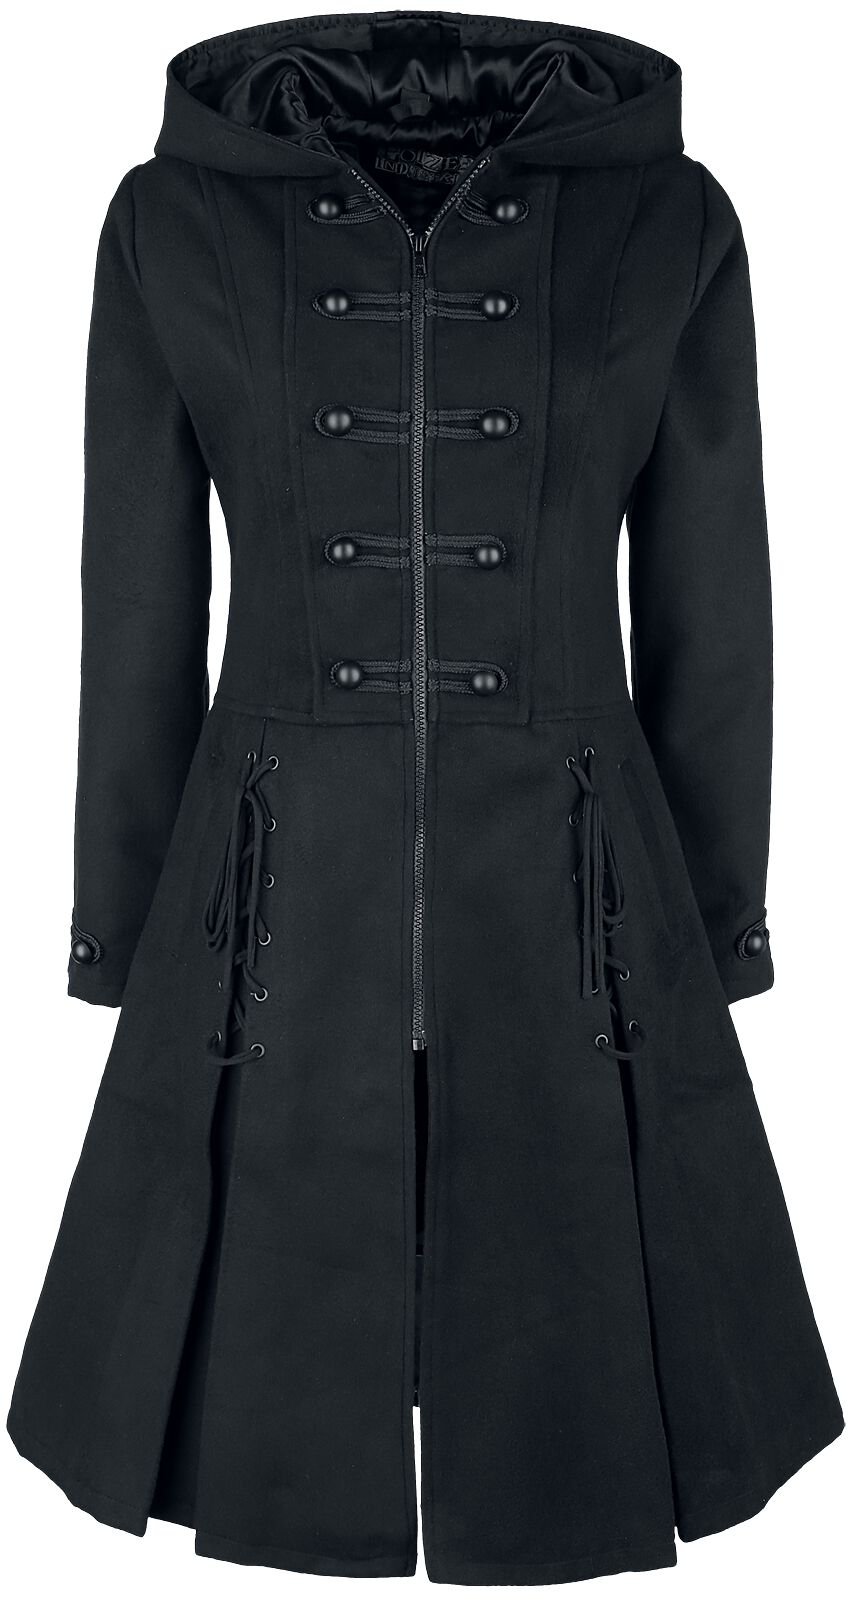 Trench-coat Gothic de Poizen Industries - Manteau Haunt - S à XXL - pour Femme - noir